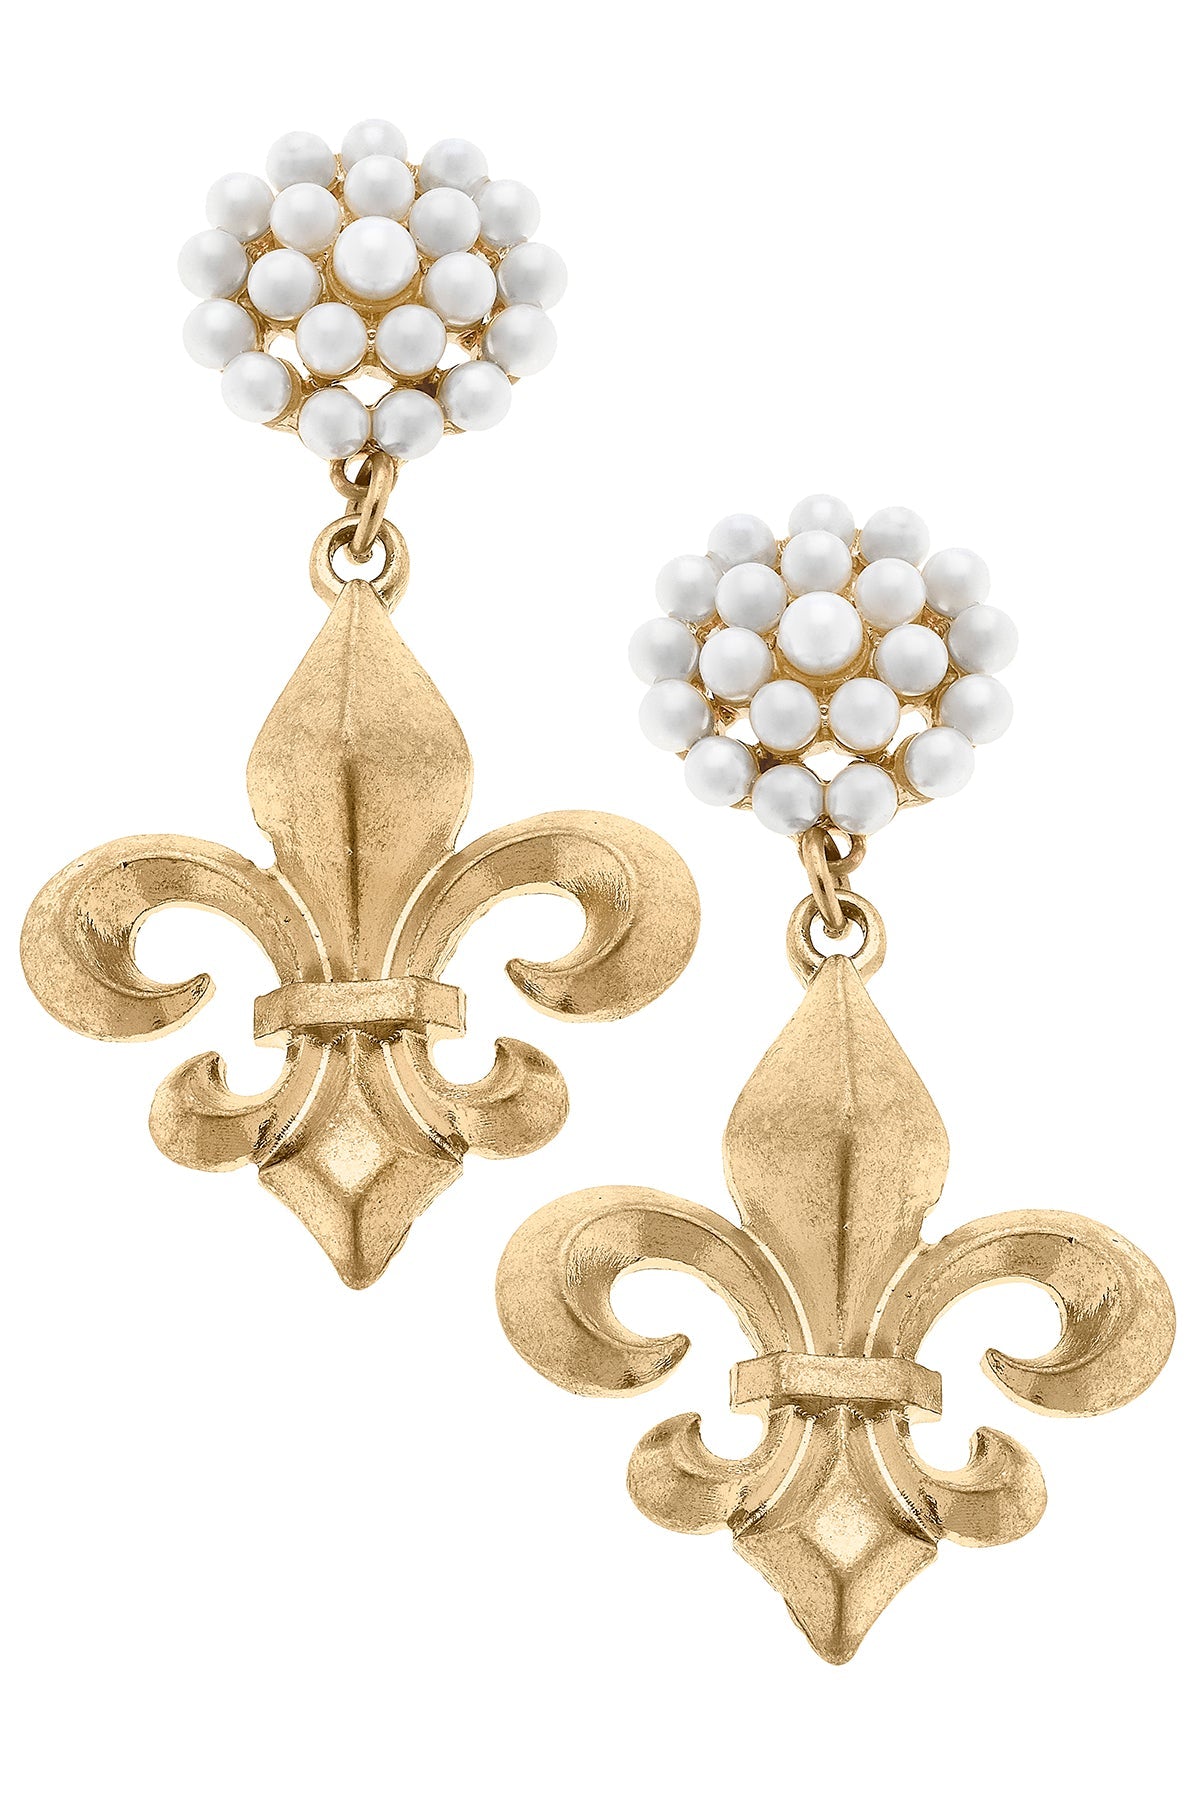 Manon Bourbon Fleur de Lis & Pearl Cluster Drop Earrings in Worn Gold by CANVAS